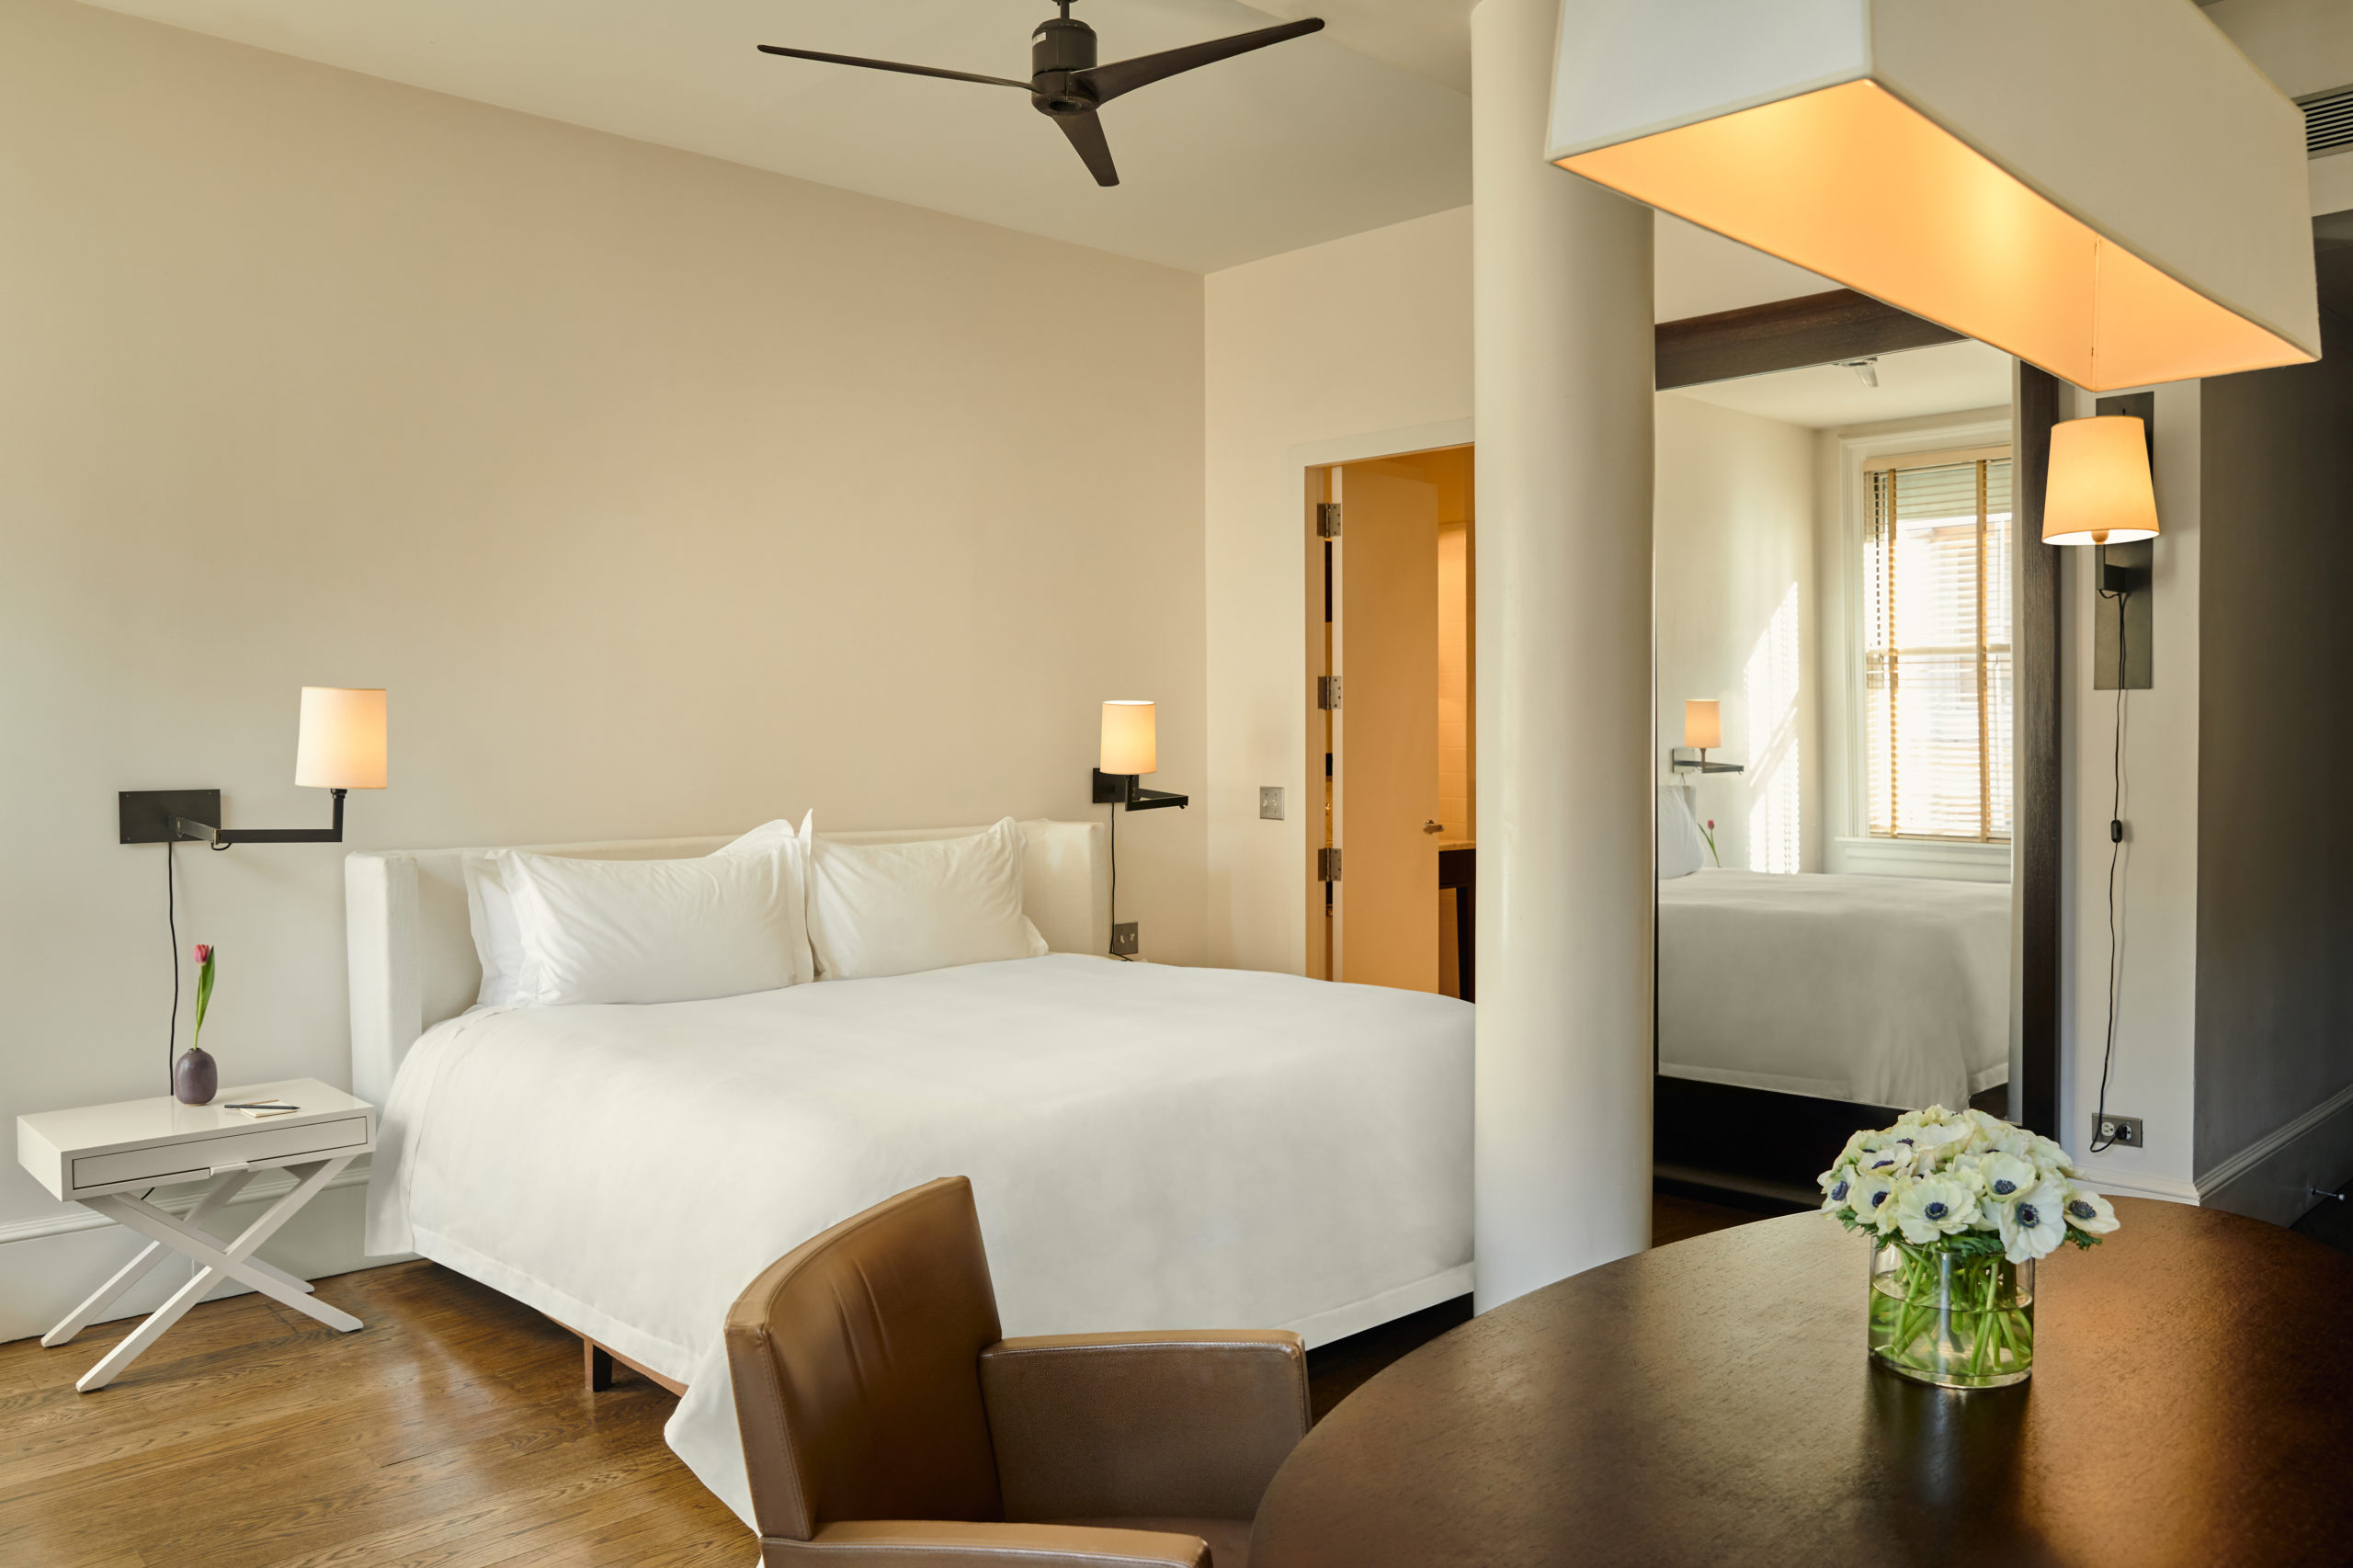 Mercer Hotel | 2 bedroom deluxe & loft studio connecting